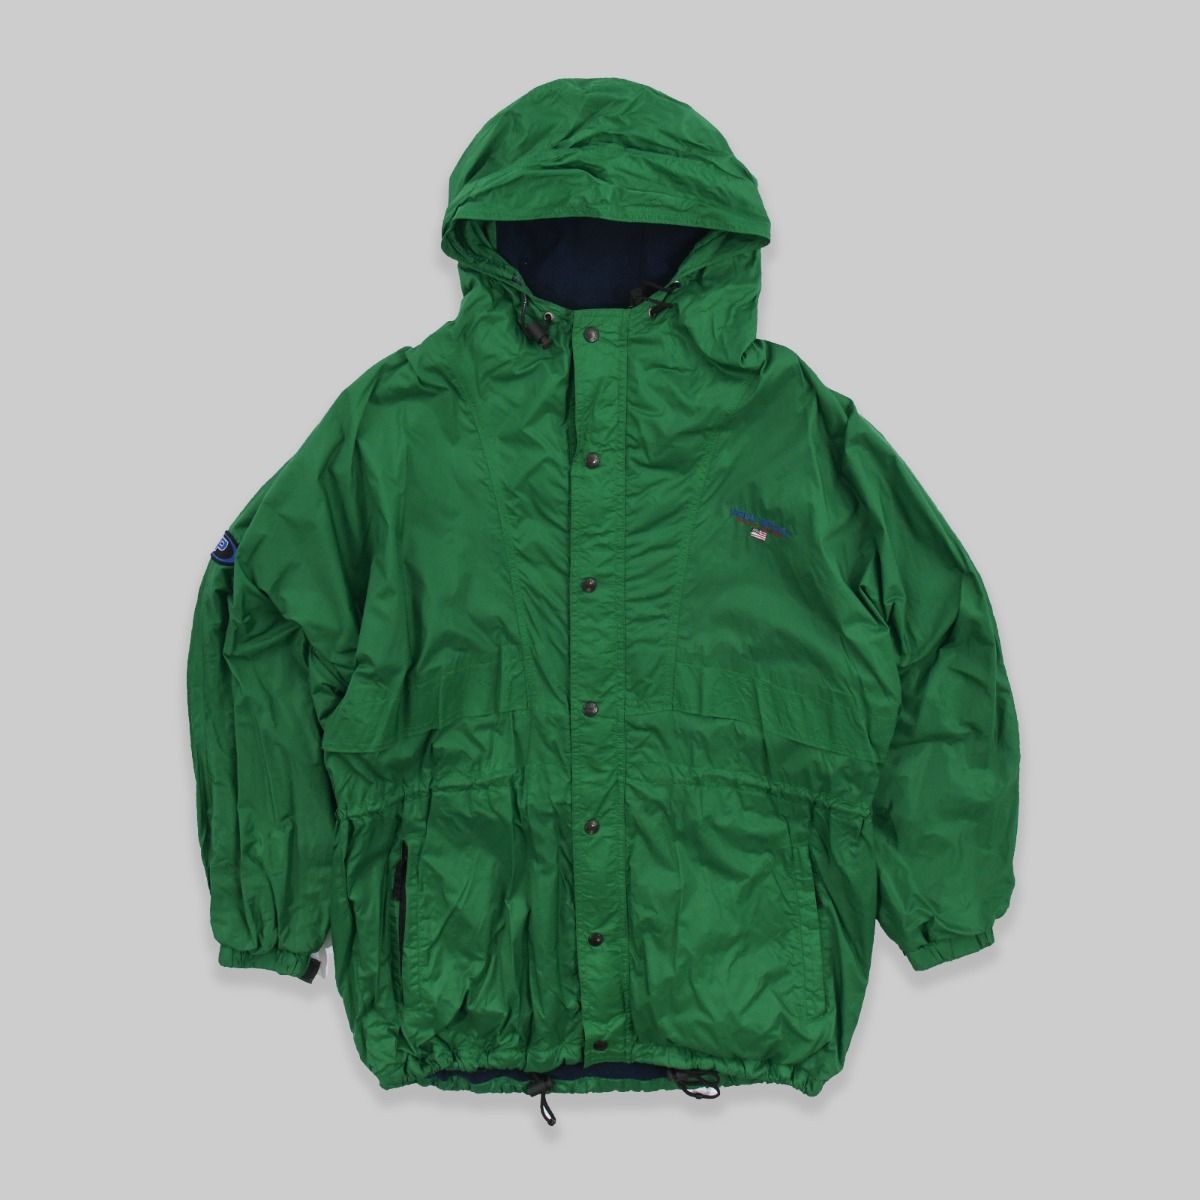 Ralph Lauren Polo Sport Green Jacket